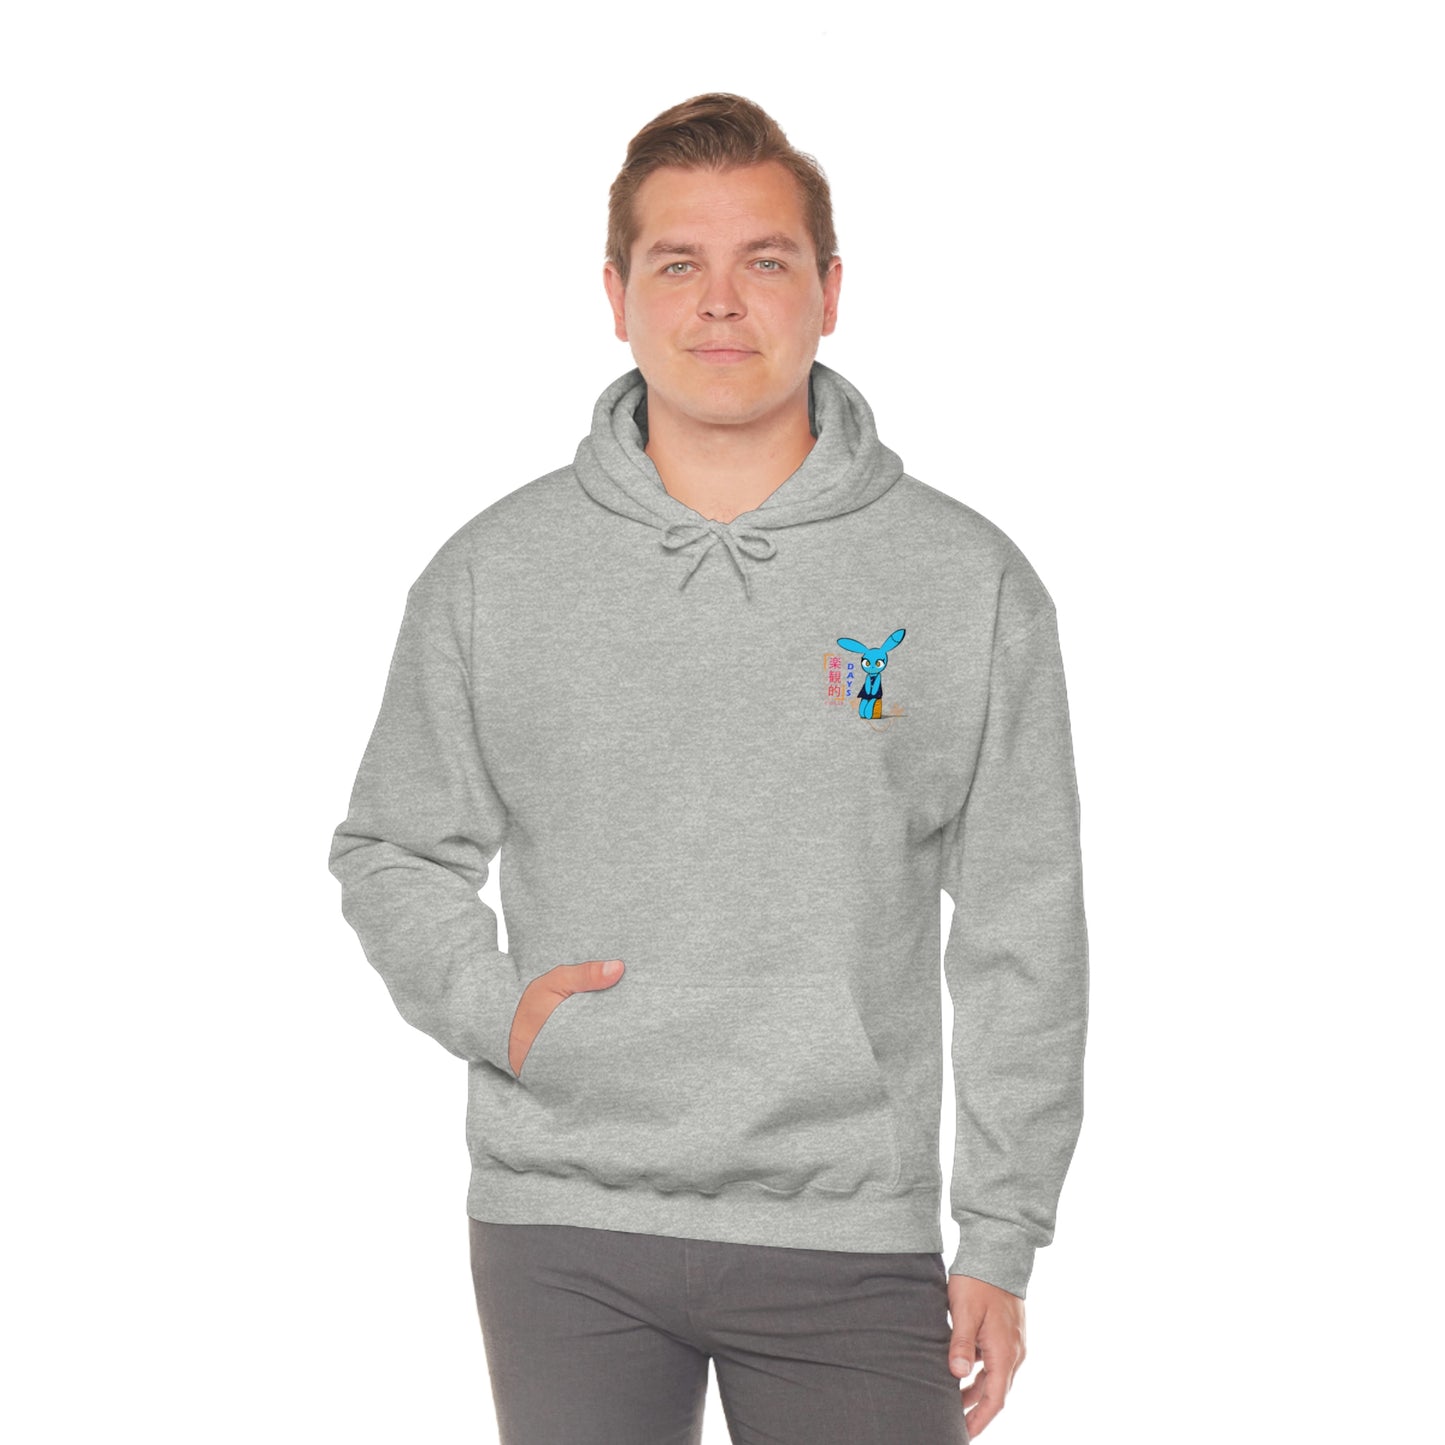 Hopeful Days - Unisex Heavy Blend™ Hooded Sweatshirt